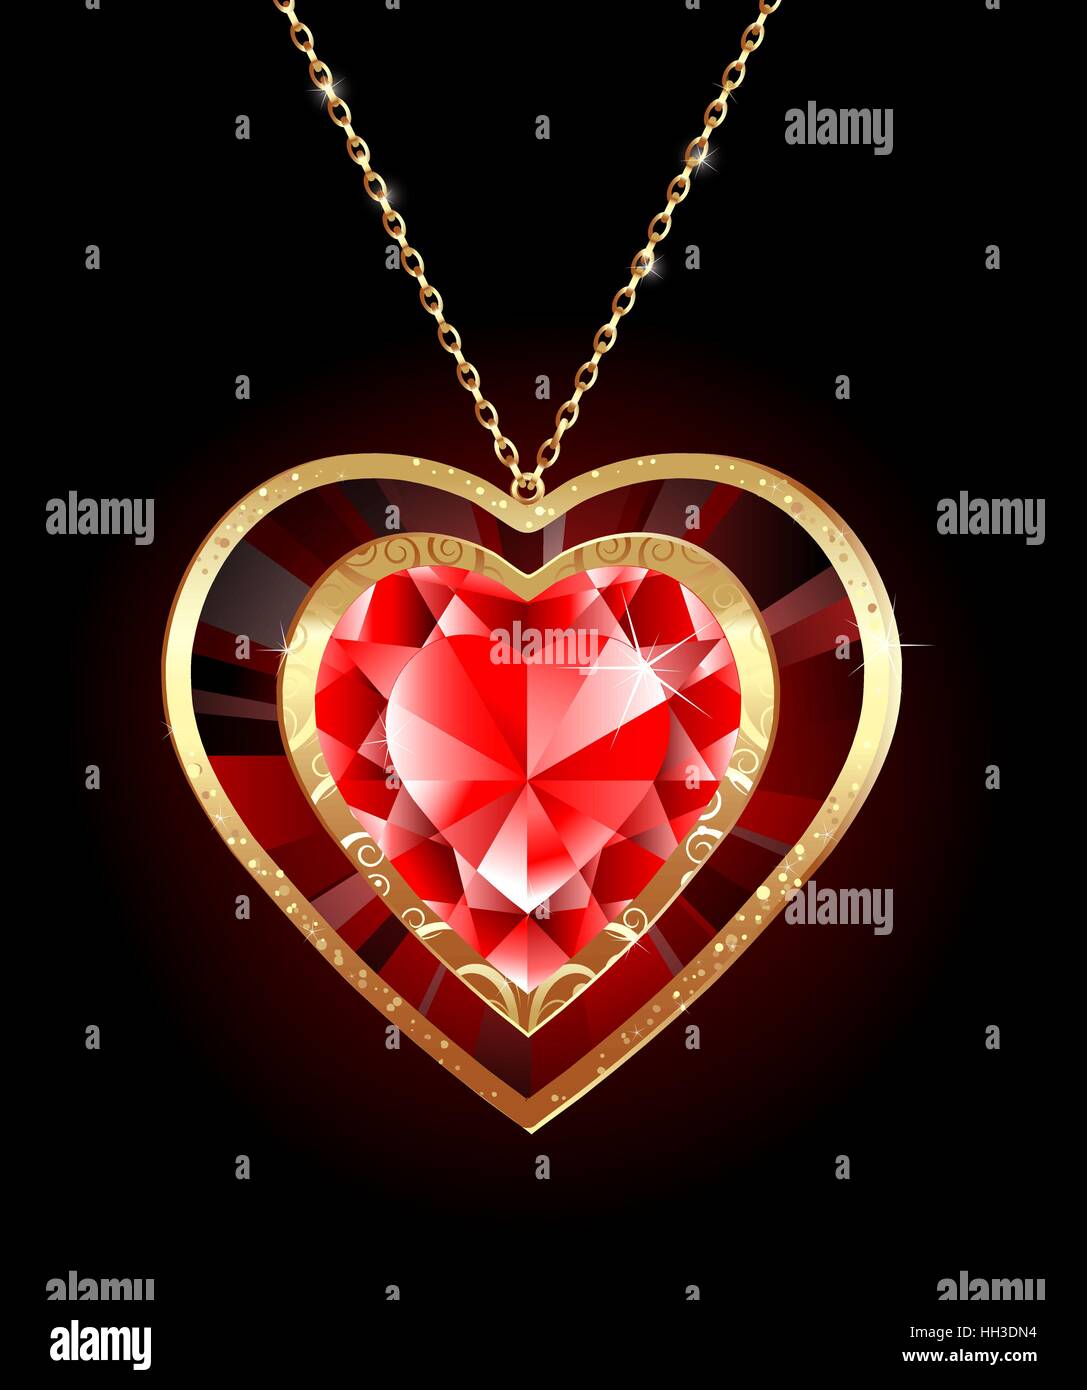 Luxus-Schmuck-Anhänger in Form von einem roten Rubin Herz auf eine goldene Kette Stock Vektor